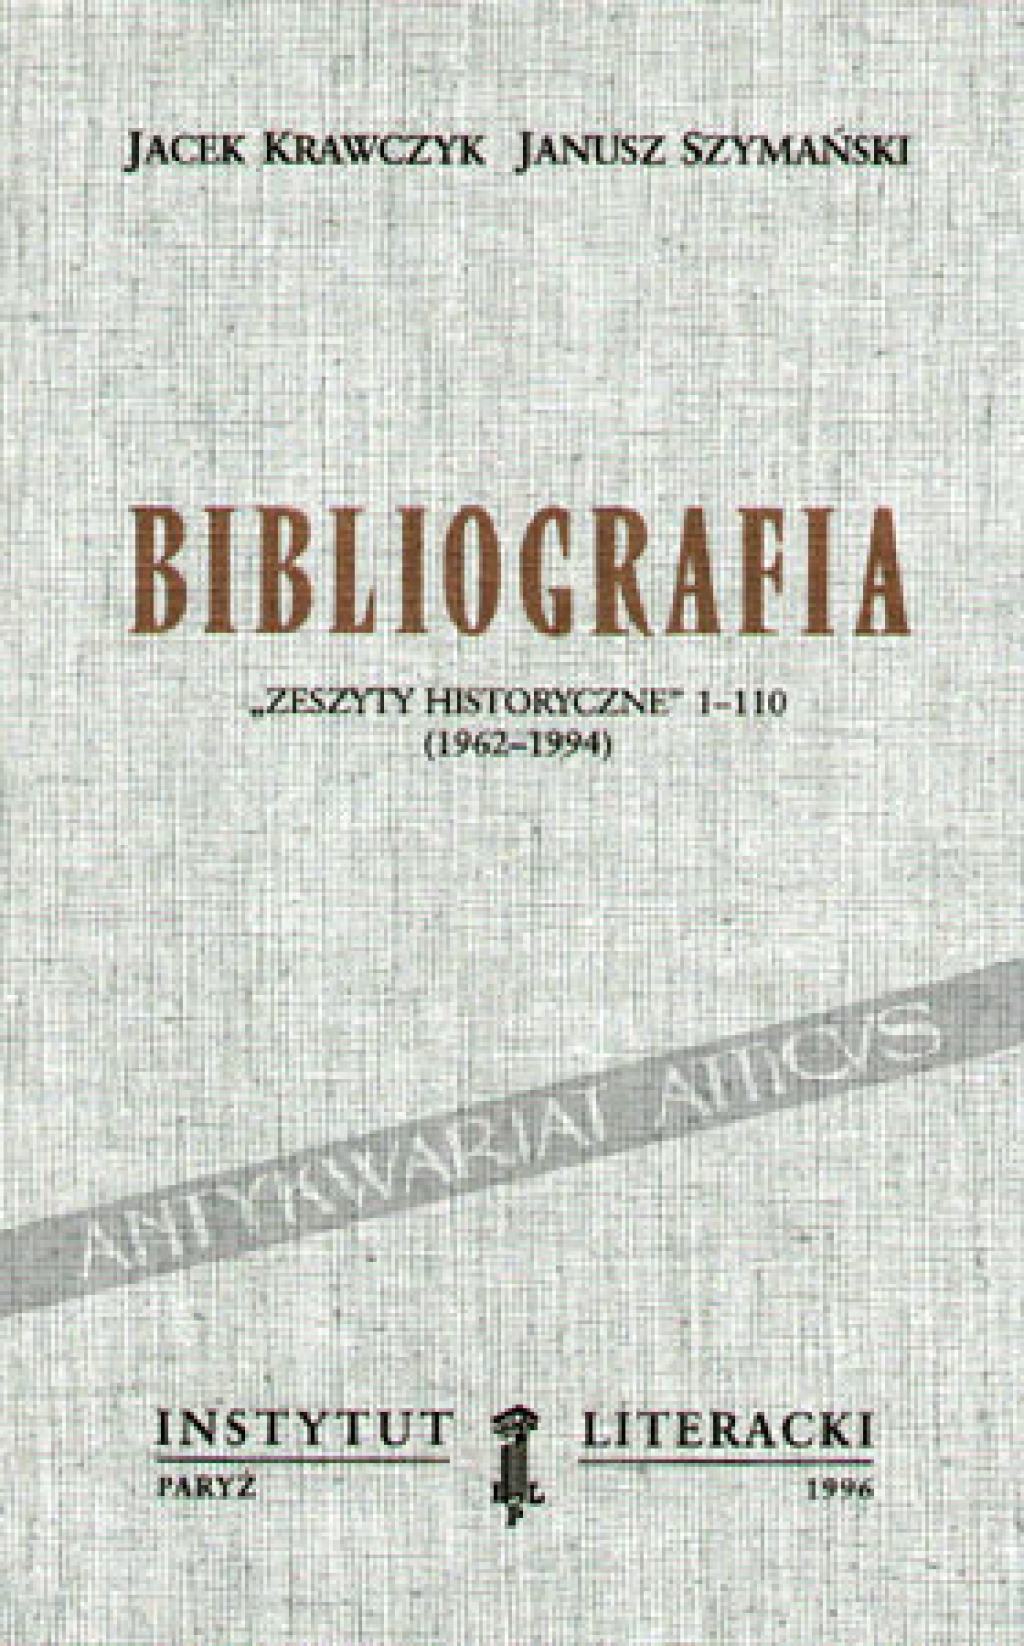 Bibliografia. "Zeszyty Historyczne" 1-110 (1962-1994)